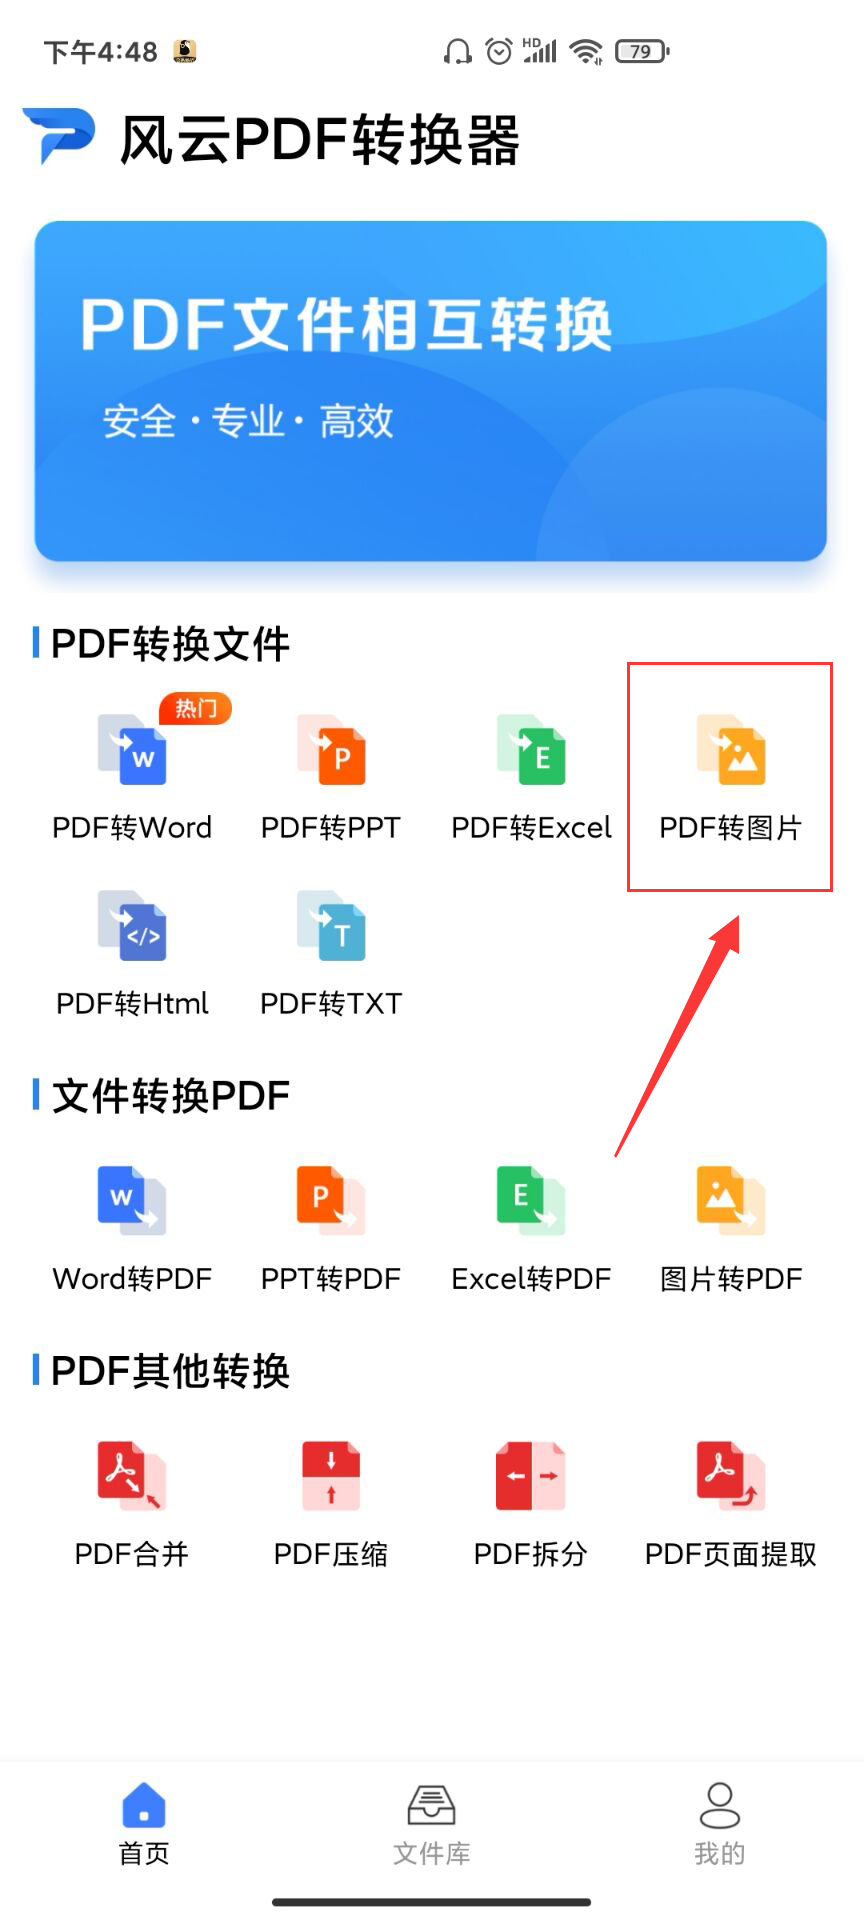 pdf转jpg软件，pdf批量转换成jpg工具有哪些